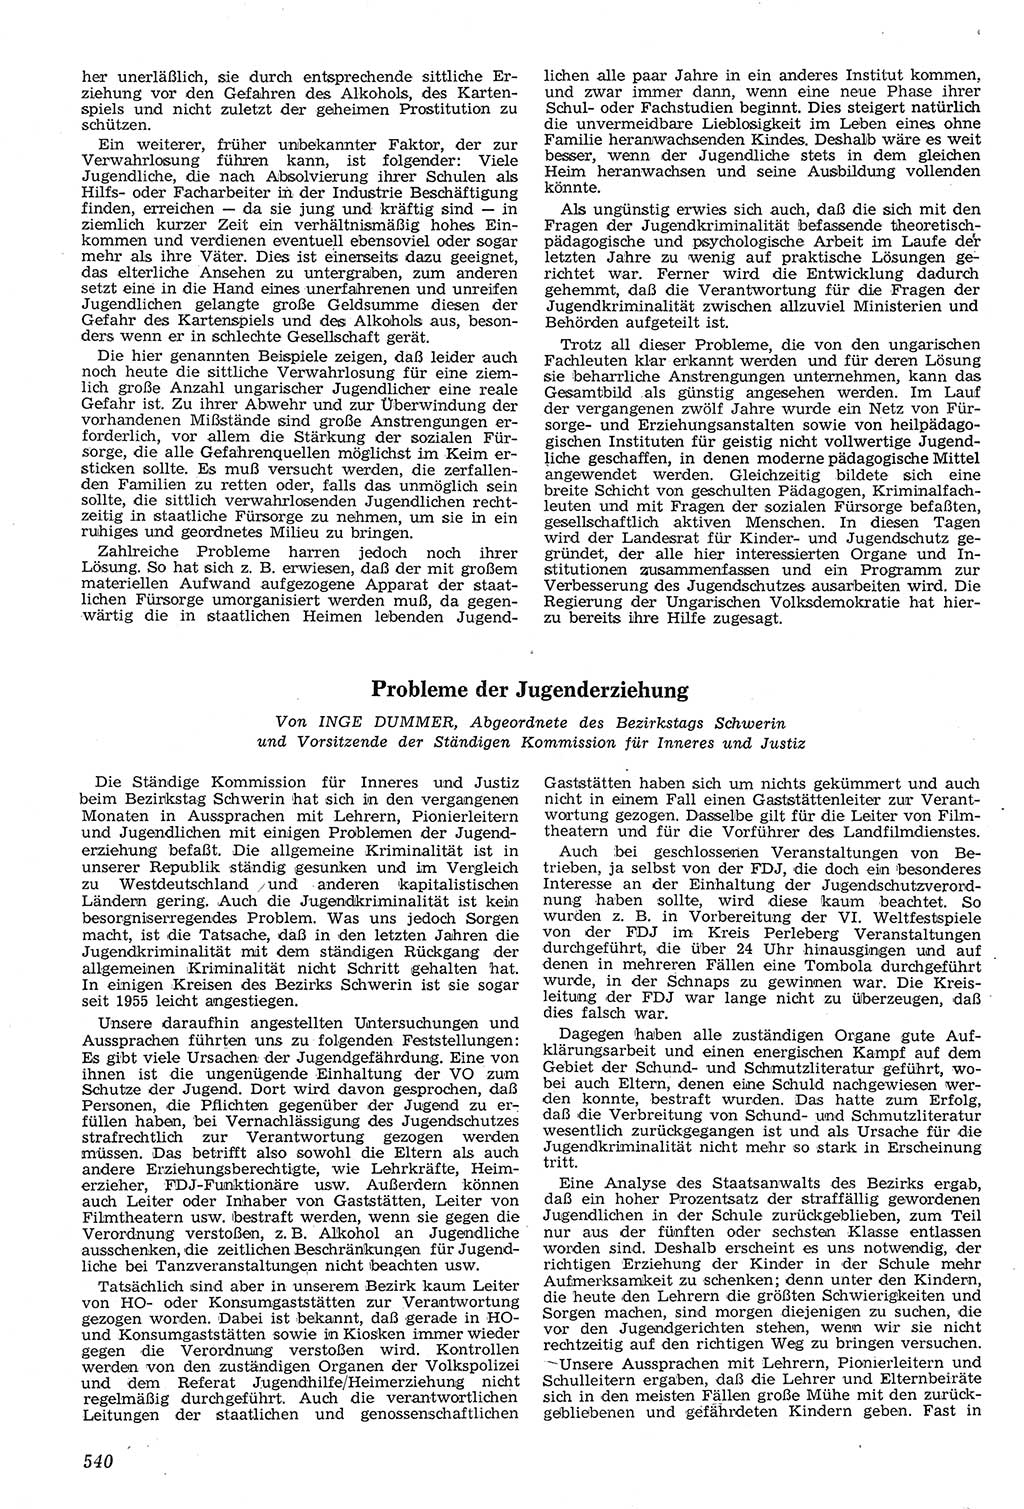 Neue Justiz (NJ), Zeitschrift für Recht und Rechtswissenschaft [Deutsche Demokratische Republik (DDR)], 11. Jahrgang 1957, Seite 540 (NJ DDR 1957, S. 540)